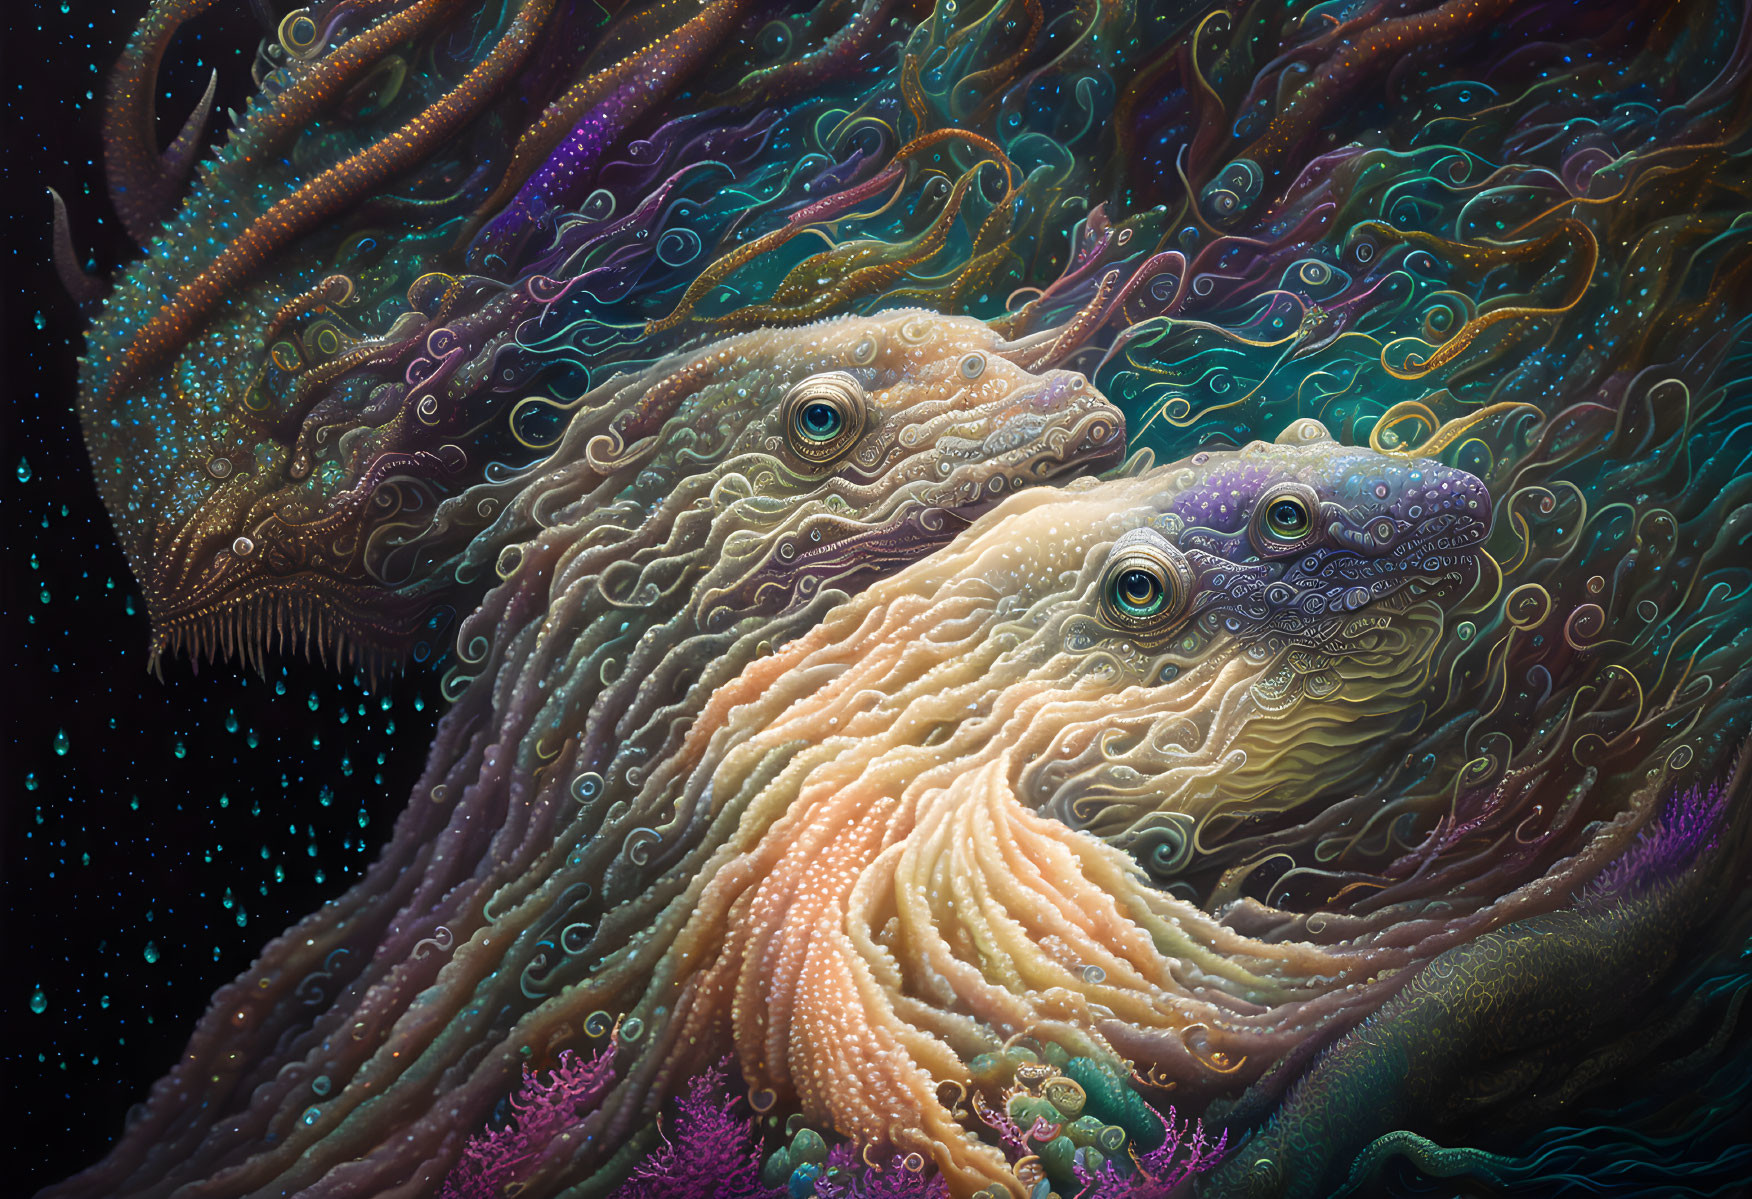 Vibrant multicolored sea serpents in surreal artwork